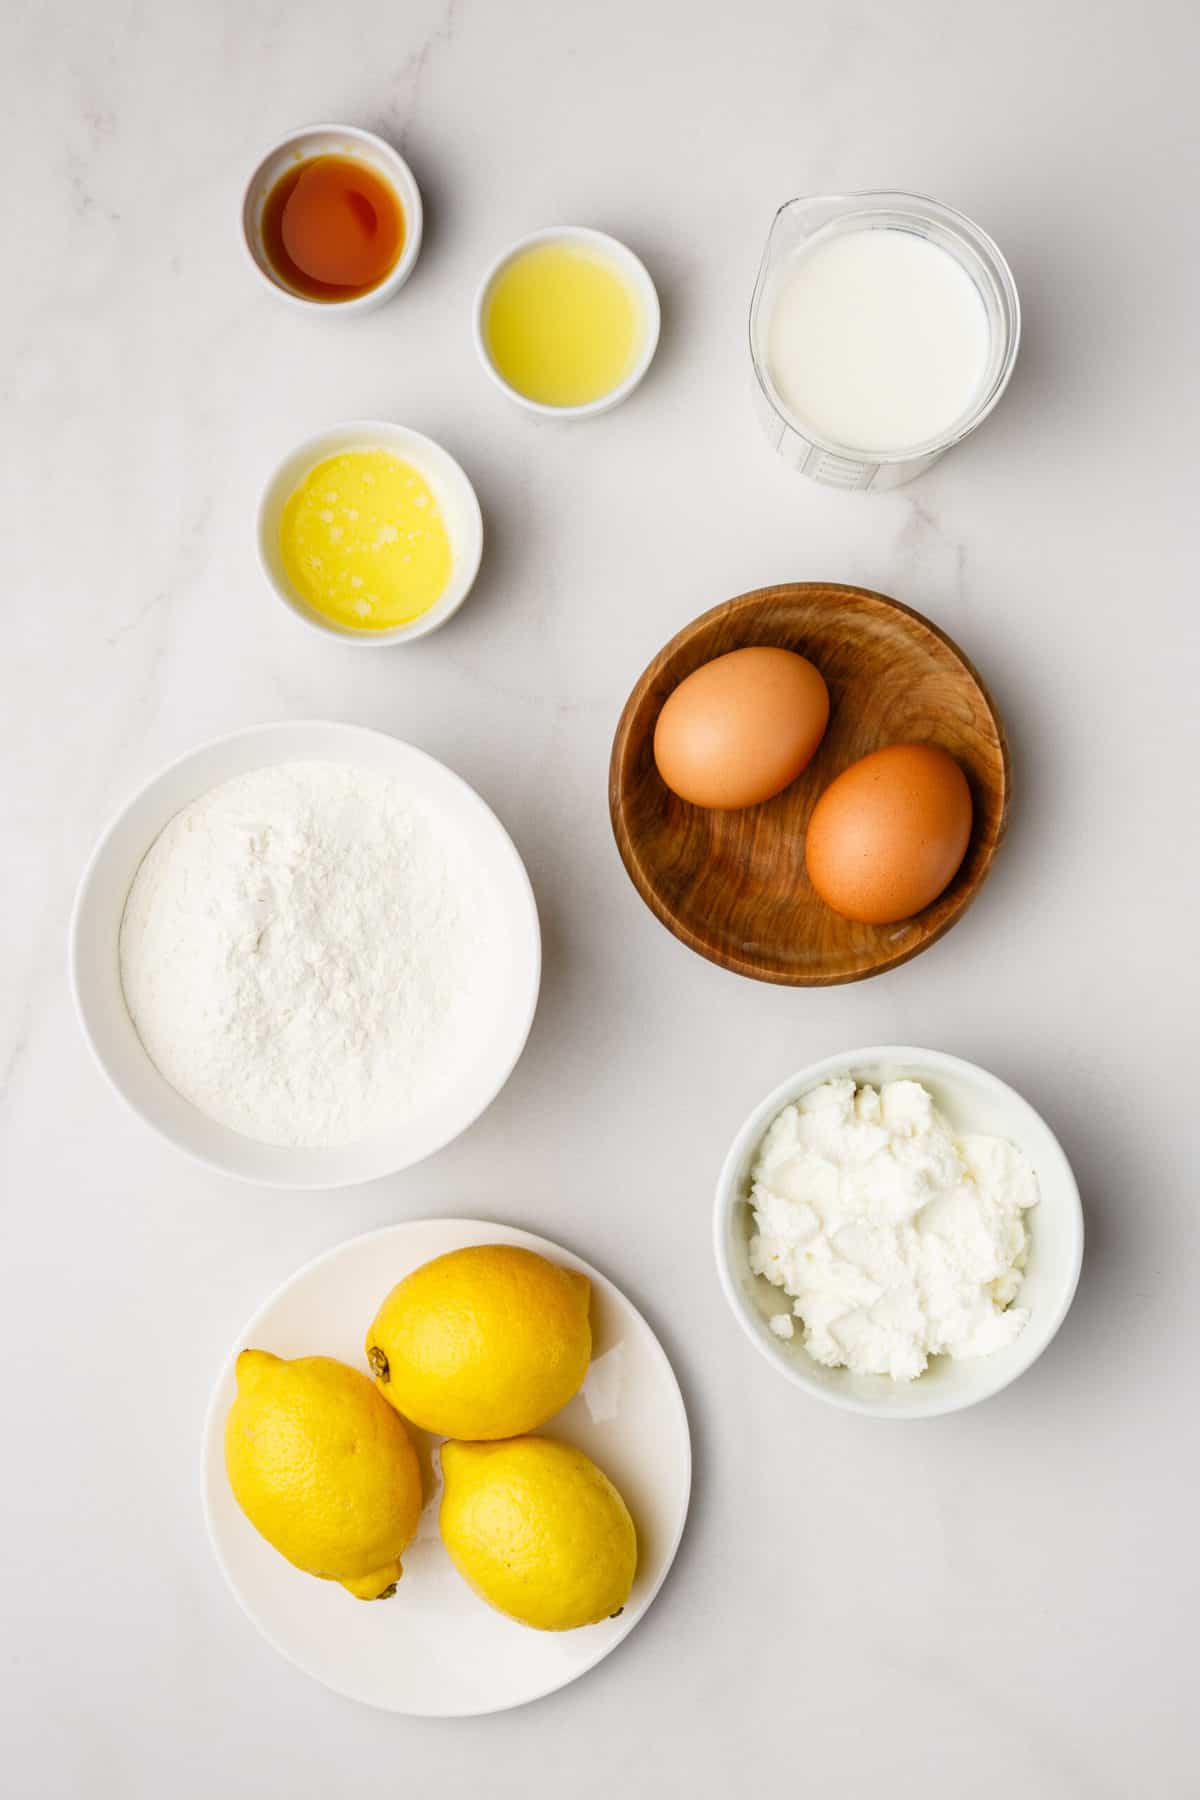 ingredients to make lemon ricotta pancakes